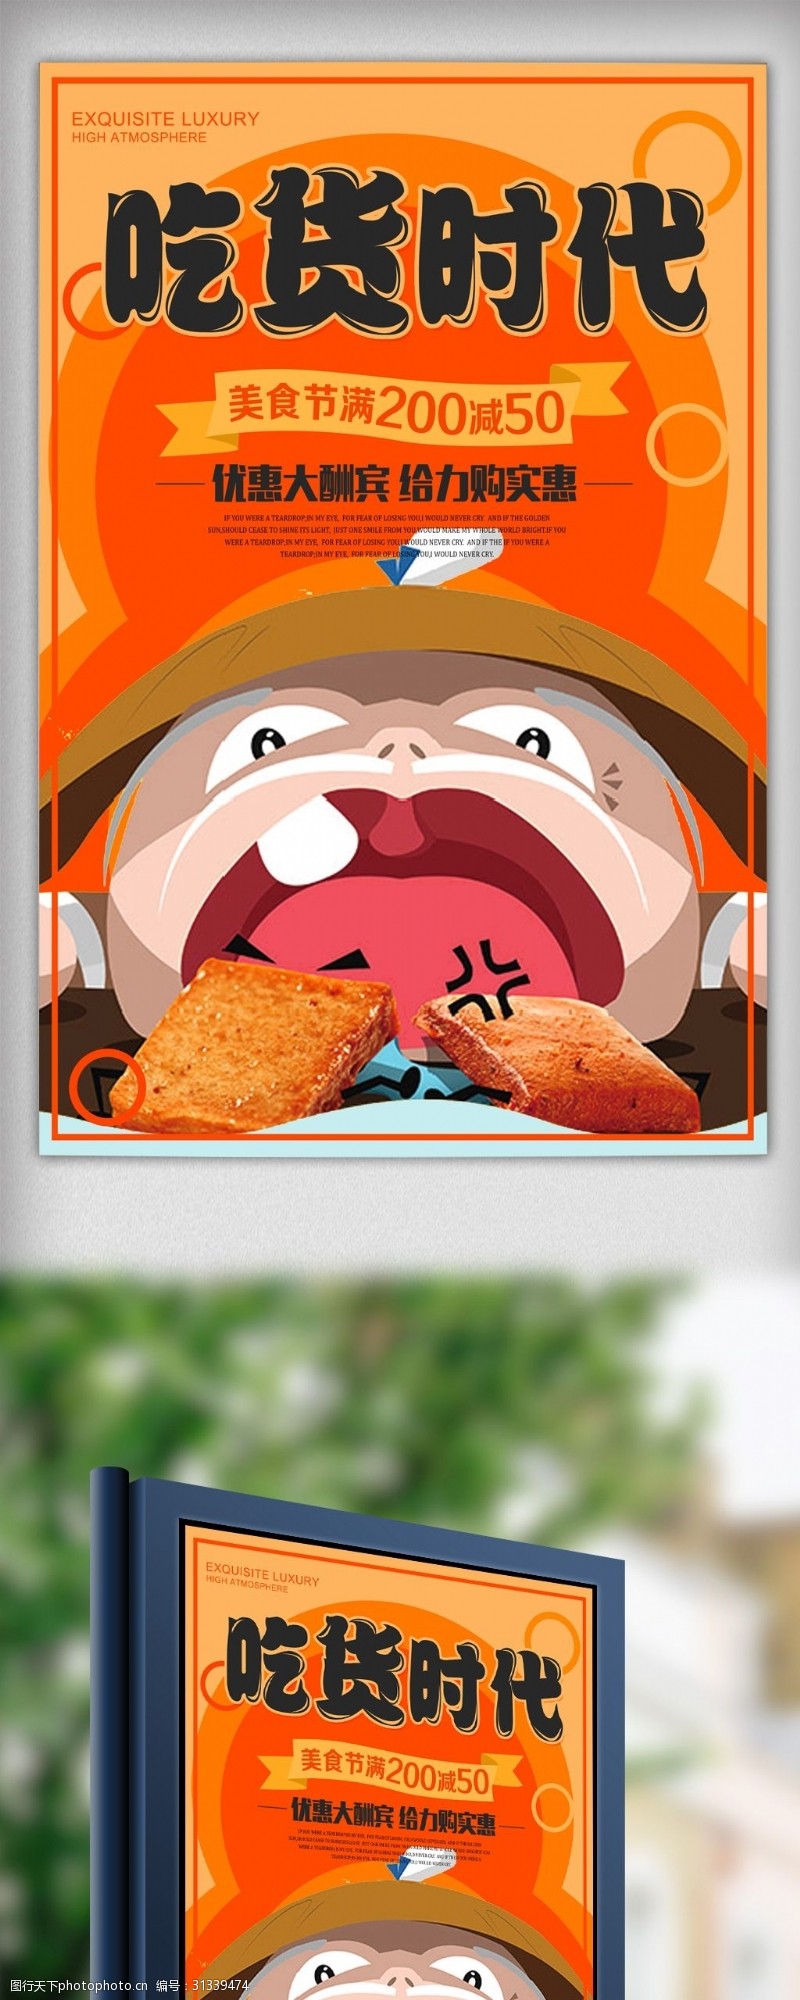 天堂之旅橘色美食吃货节创意卡通海报